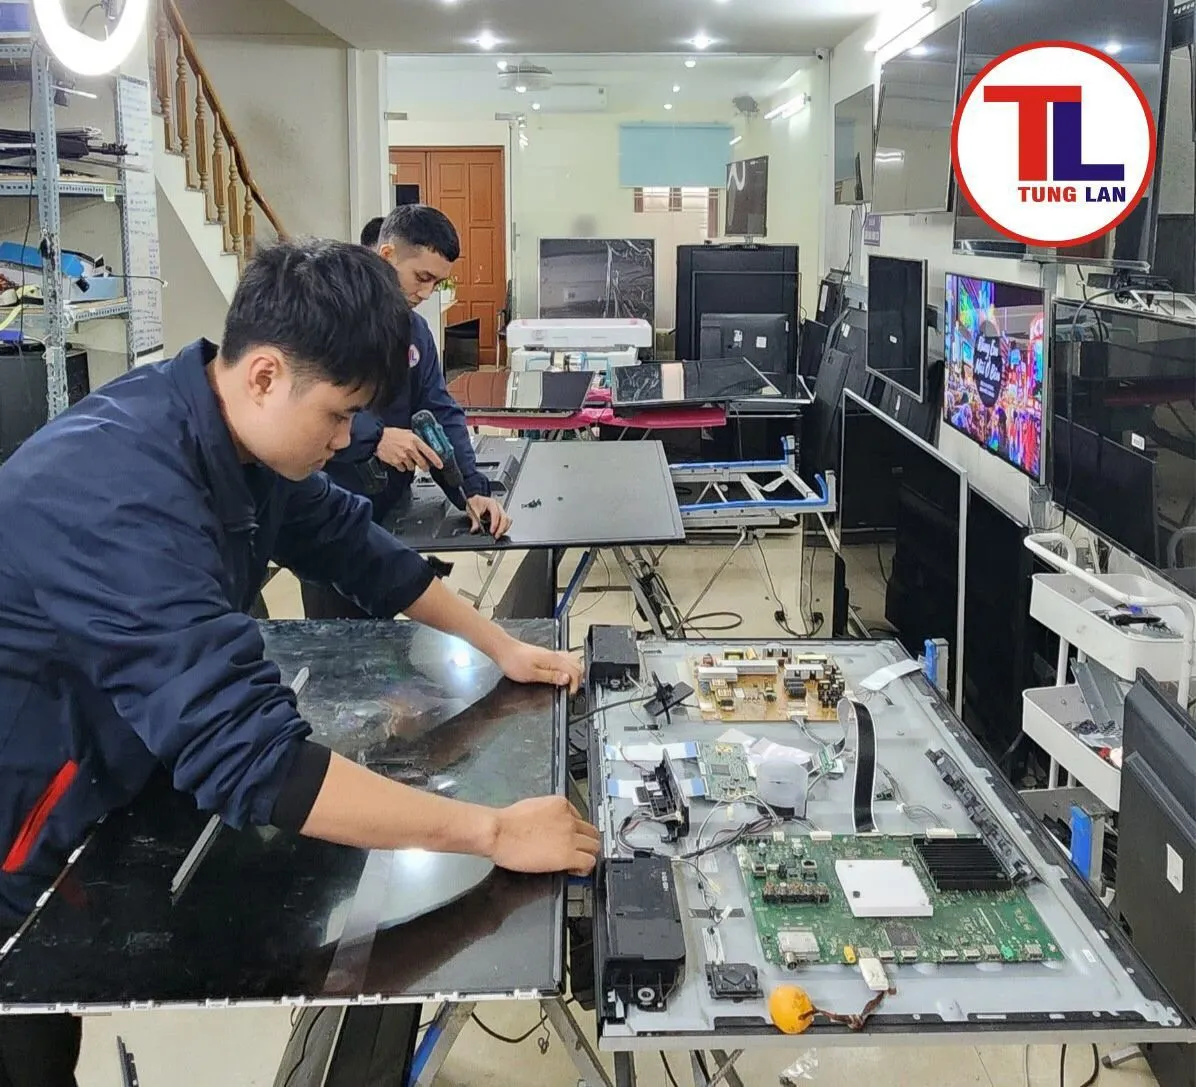 Đội ngũ chuyên viên kỹ thuật cao tại Tùng Lan có nhiều kinh nghiệm và thâm niên trong nghề